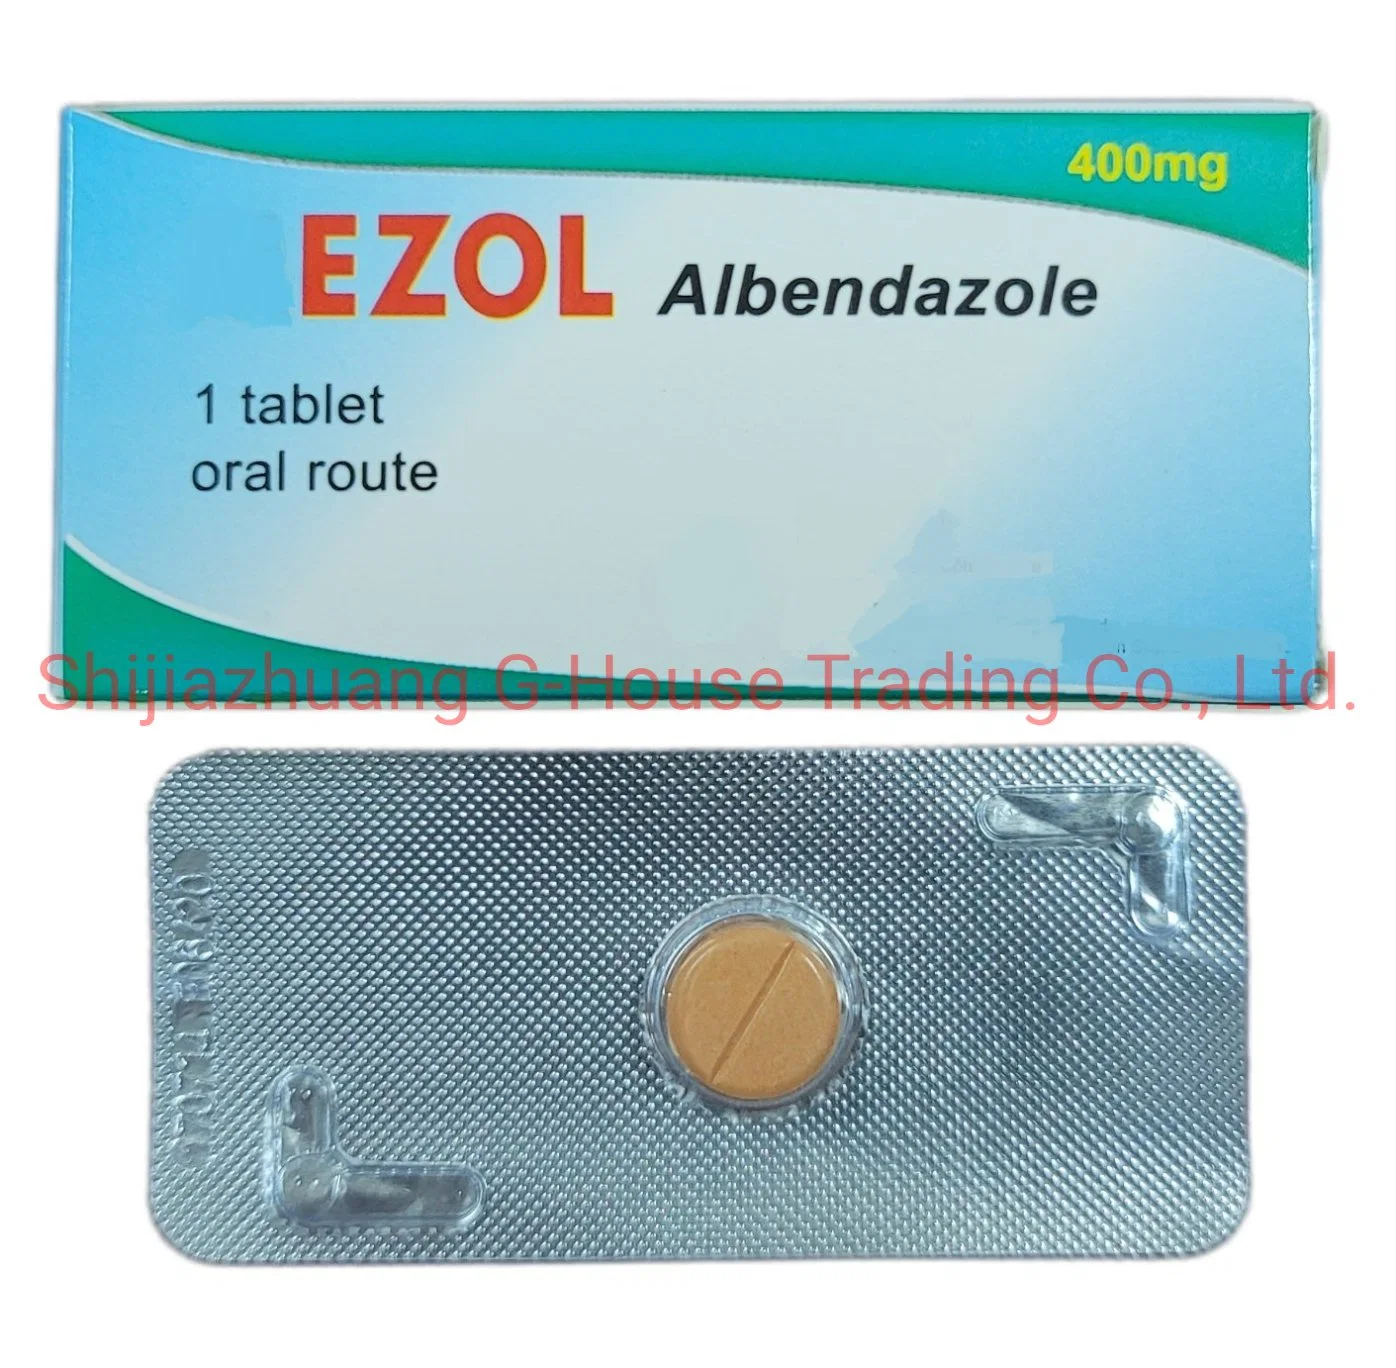 Albendazole Tabletten 400mg Pharmazeutische westliche Medizin